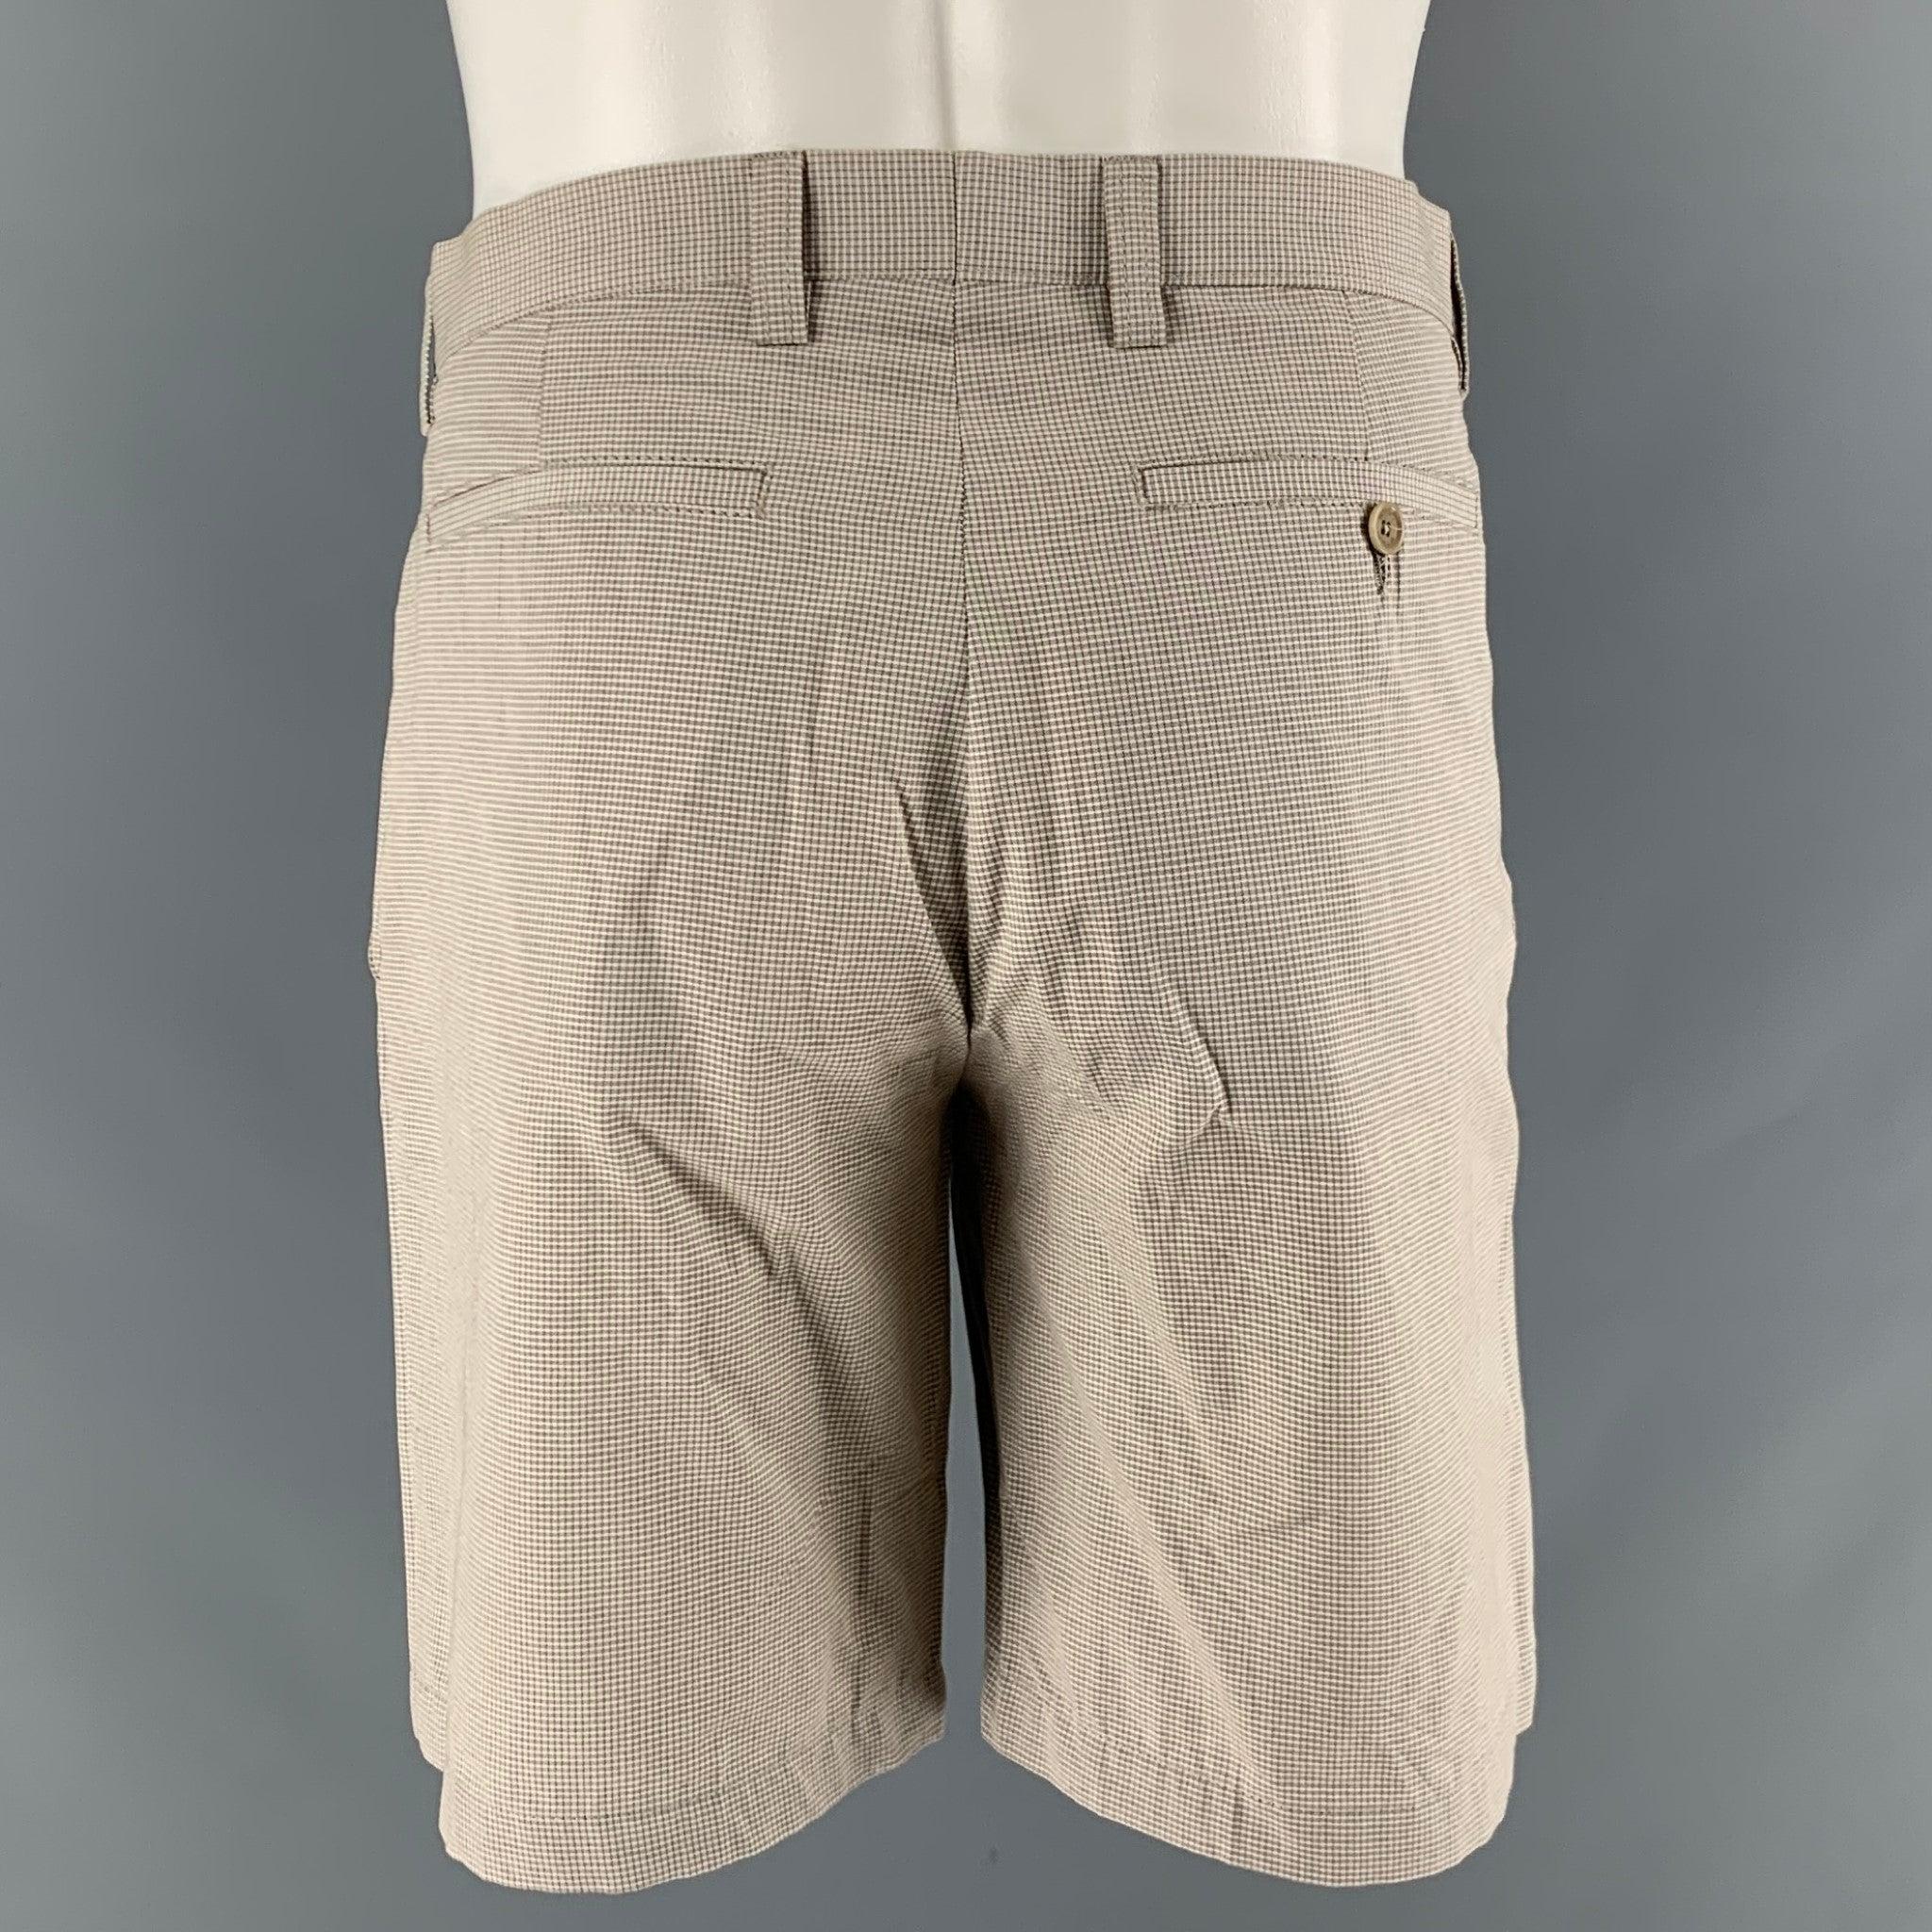 Men's ETRO Size 32 Khaki Window Pane Cotton Shorts For Sale